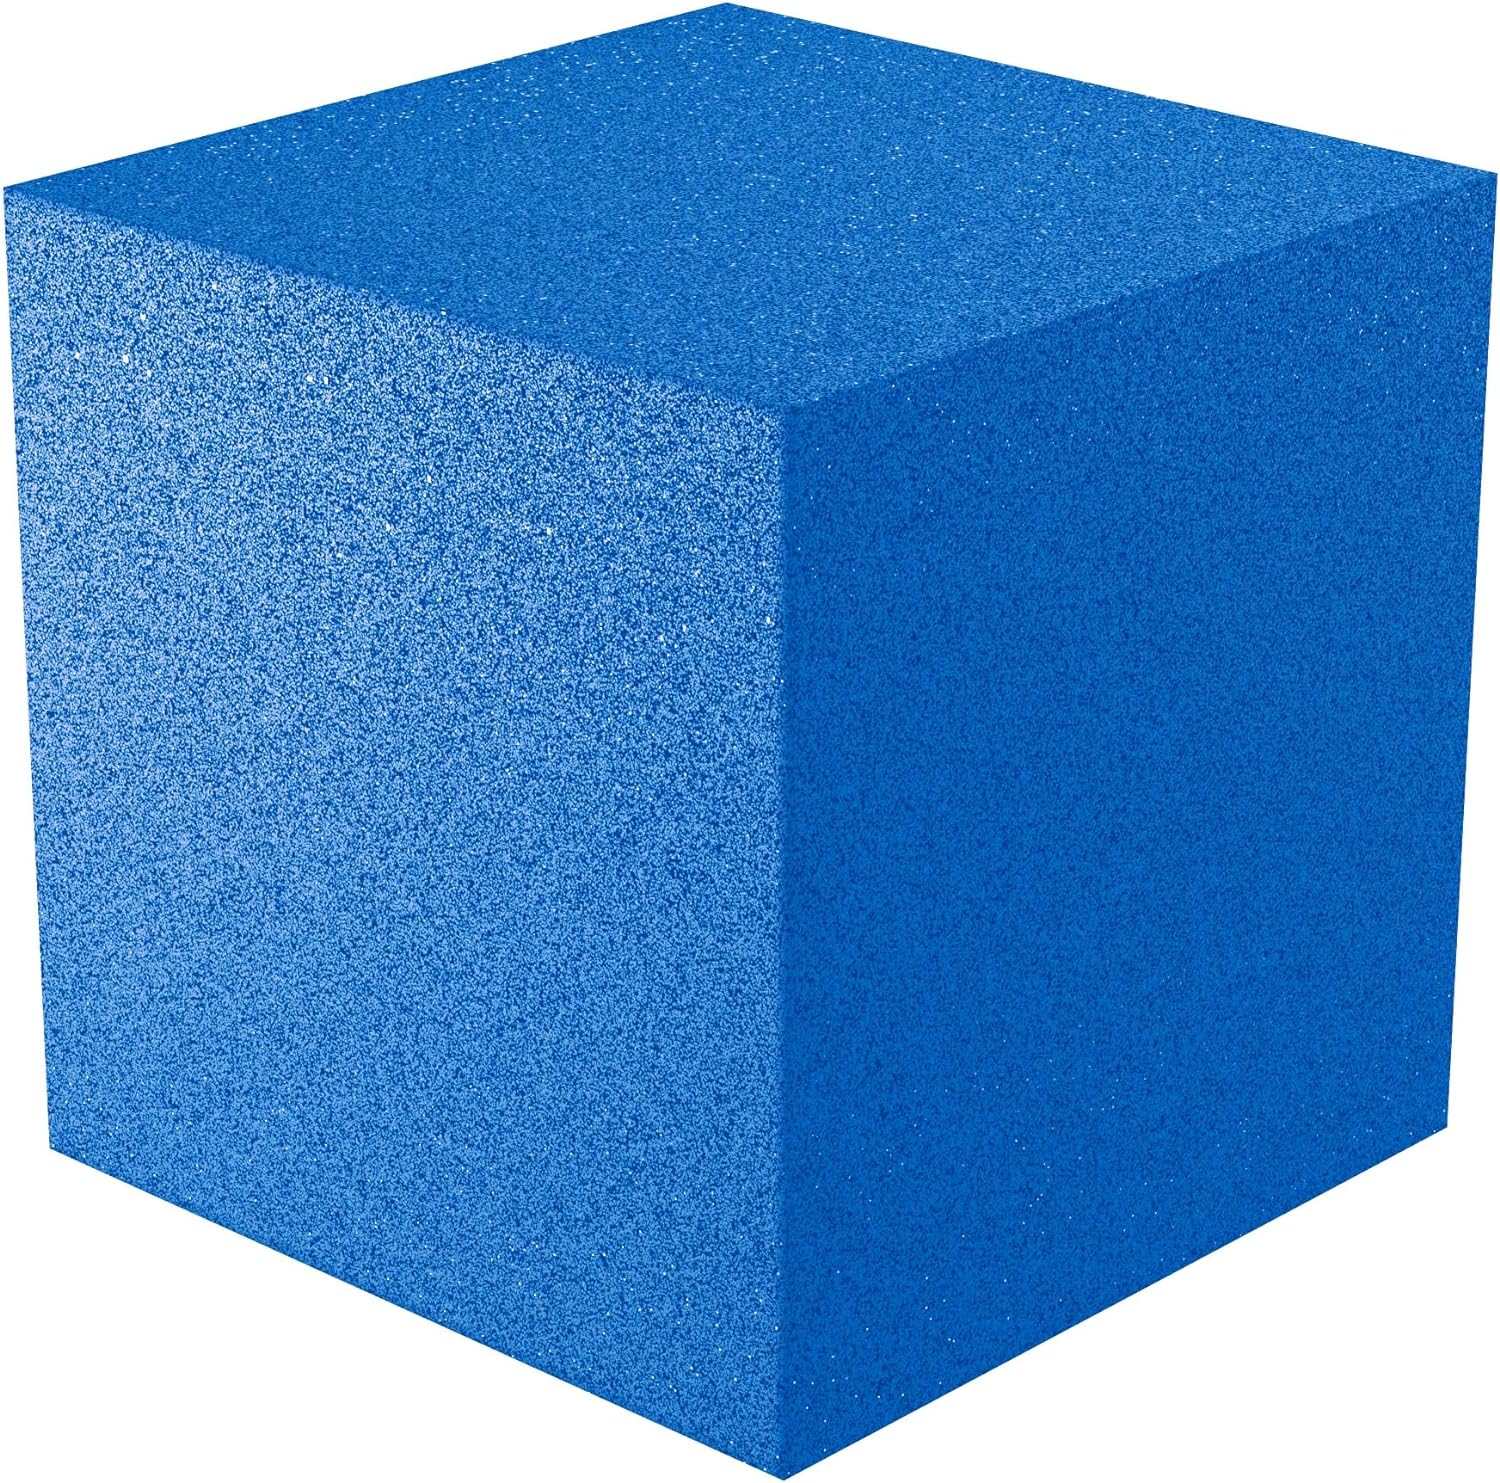 12x12x12 acoustic foam corner block - blue foam square